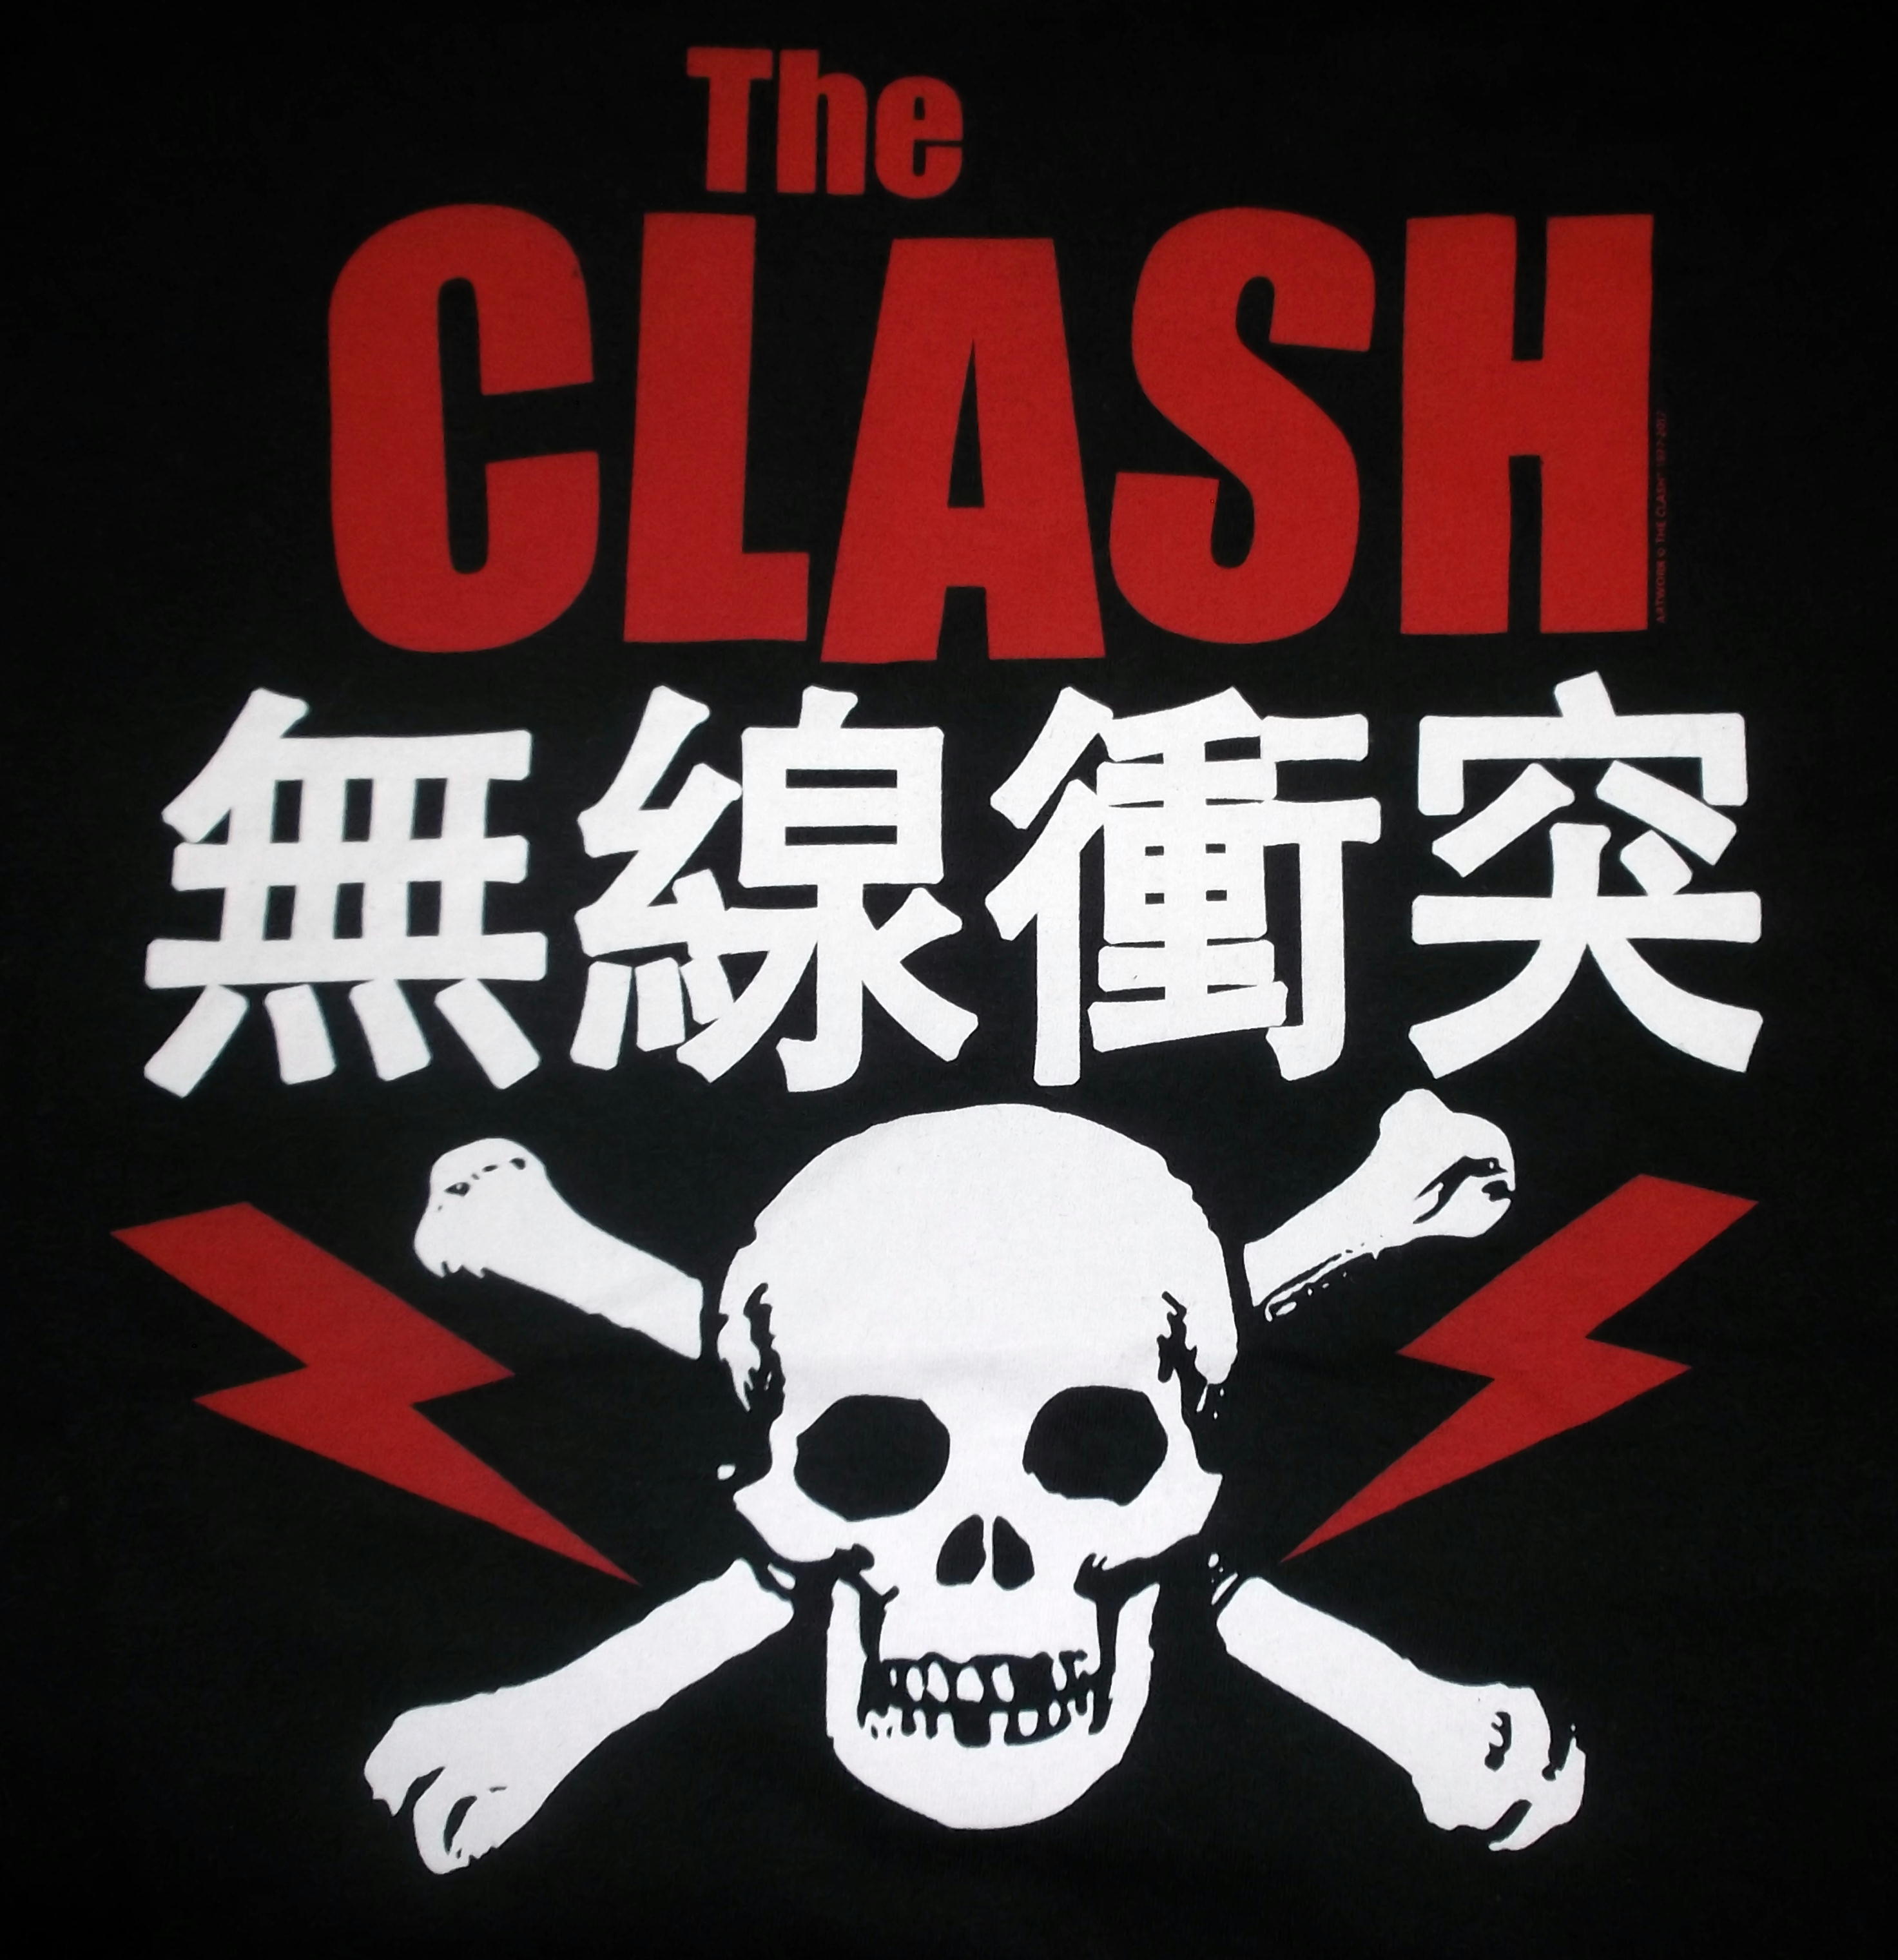 バンドTシャツ 通販 ザ・クラッシュ The Clash Tシャツ 販売,無線衝突